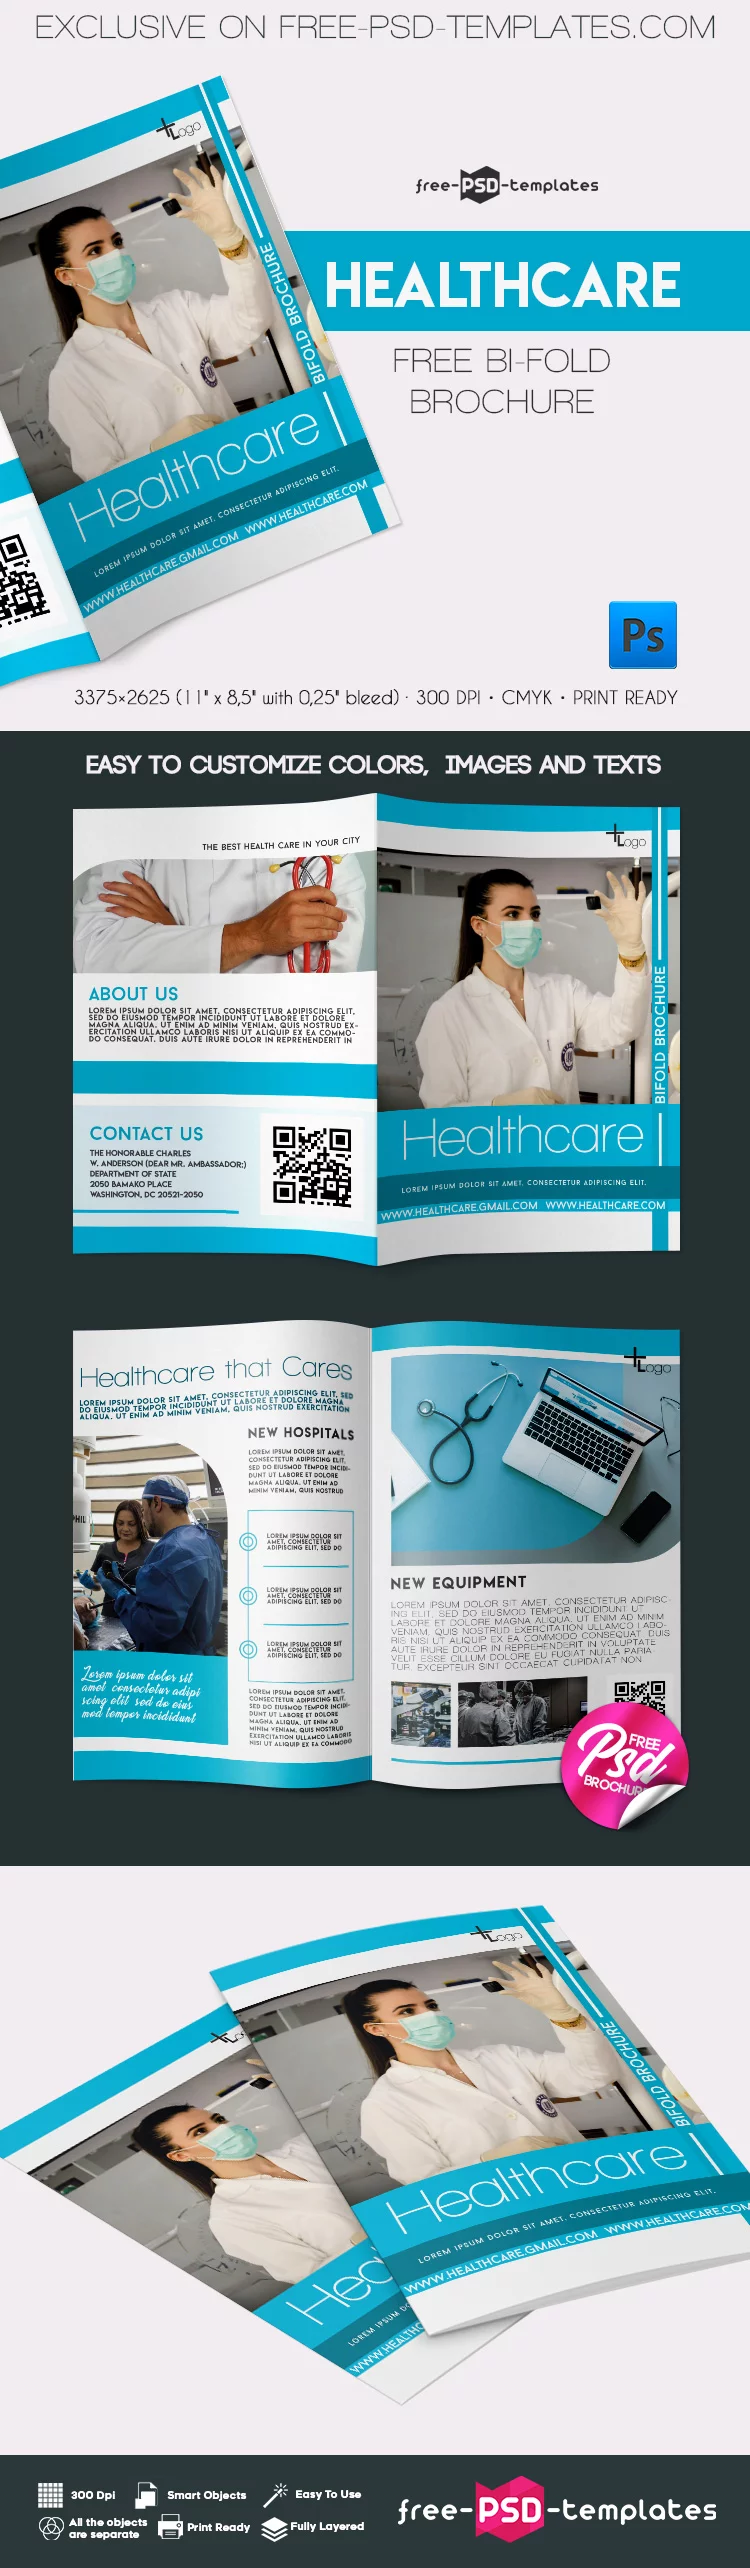 Free Healthcare Bi-Fold Brochure in PSD